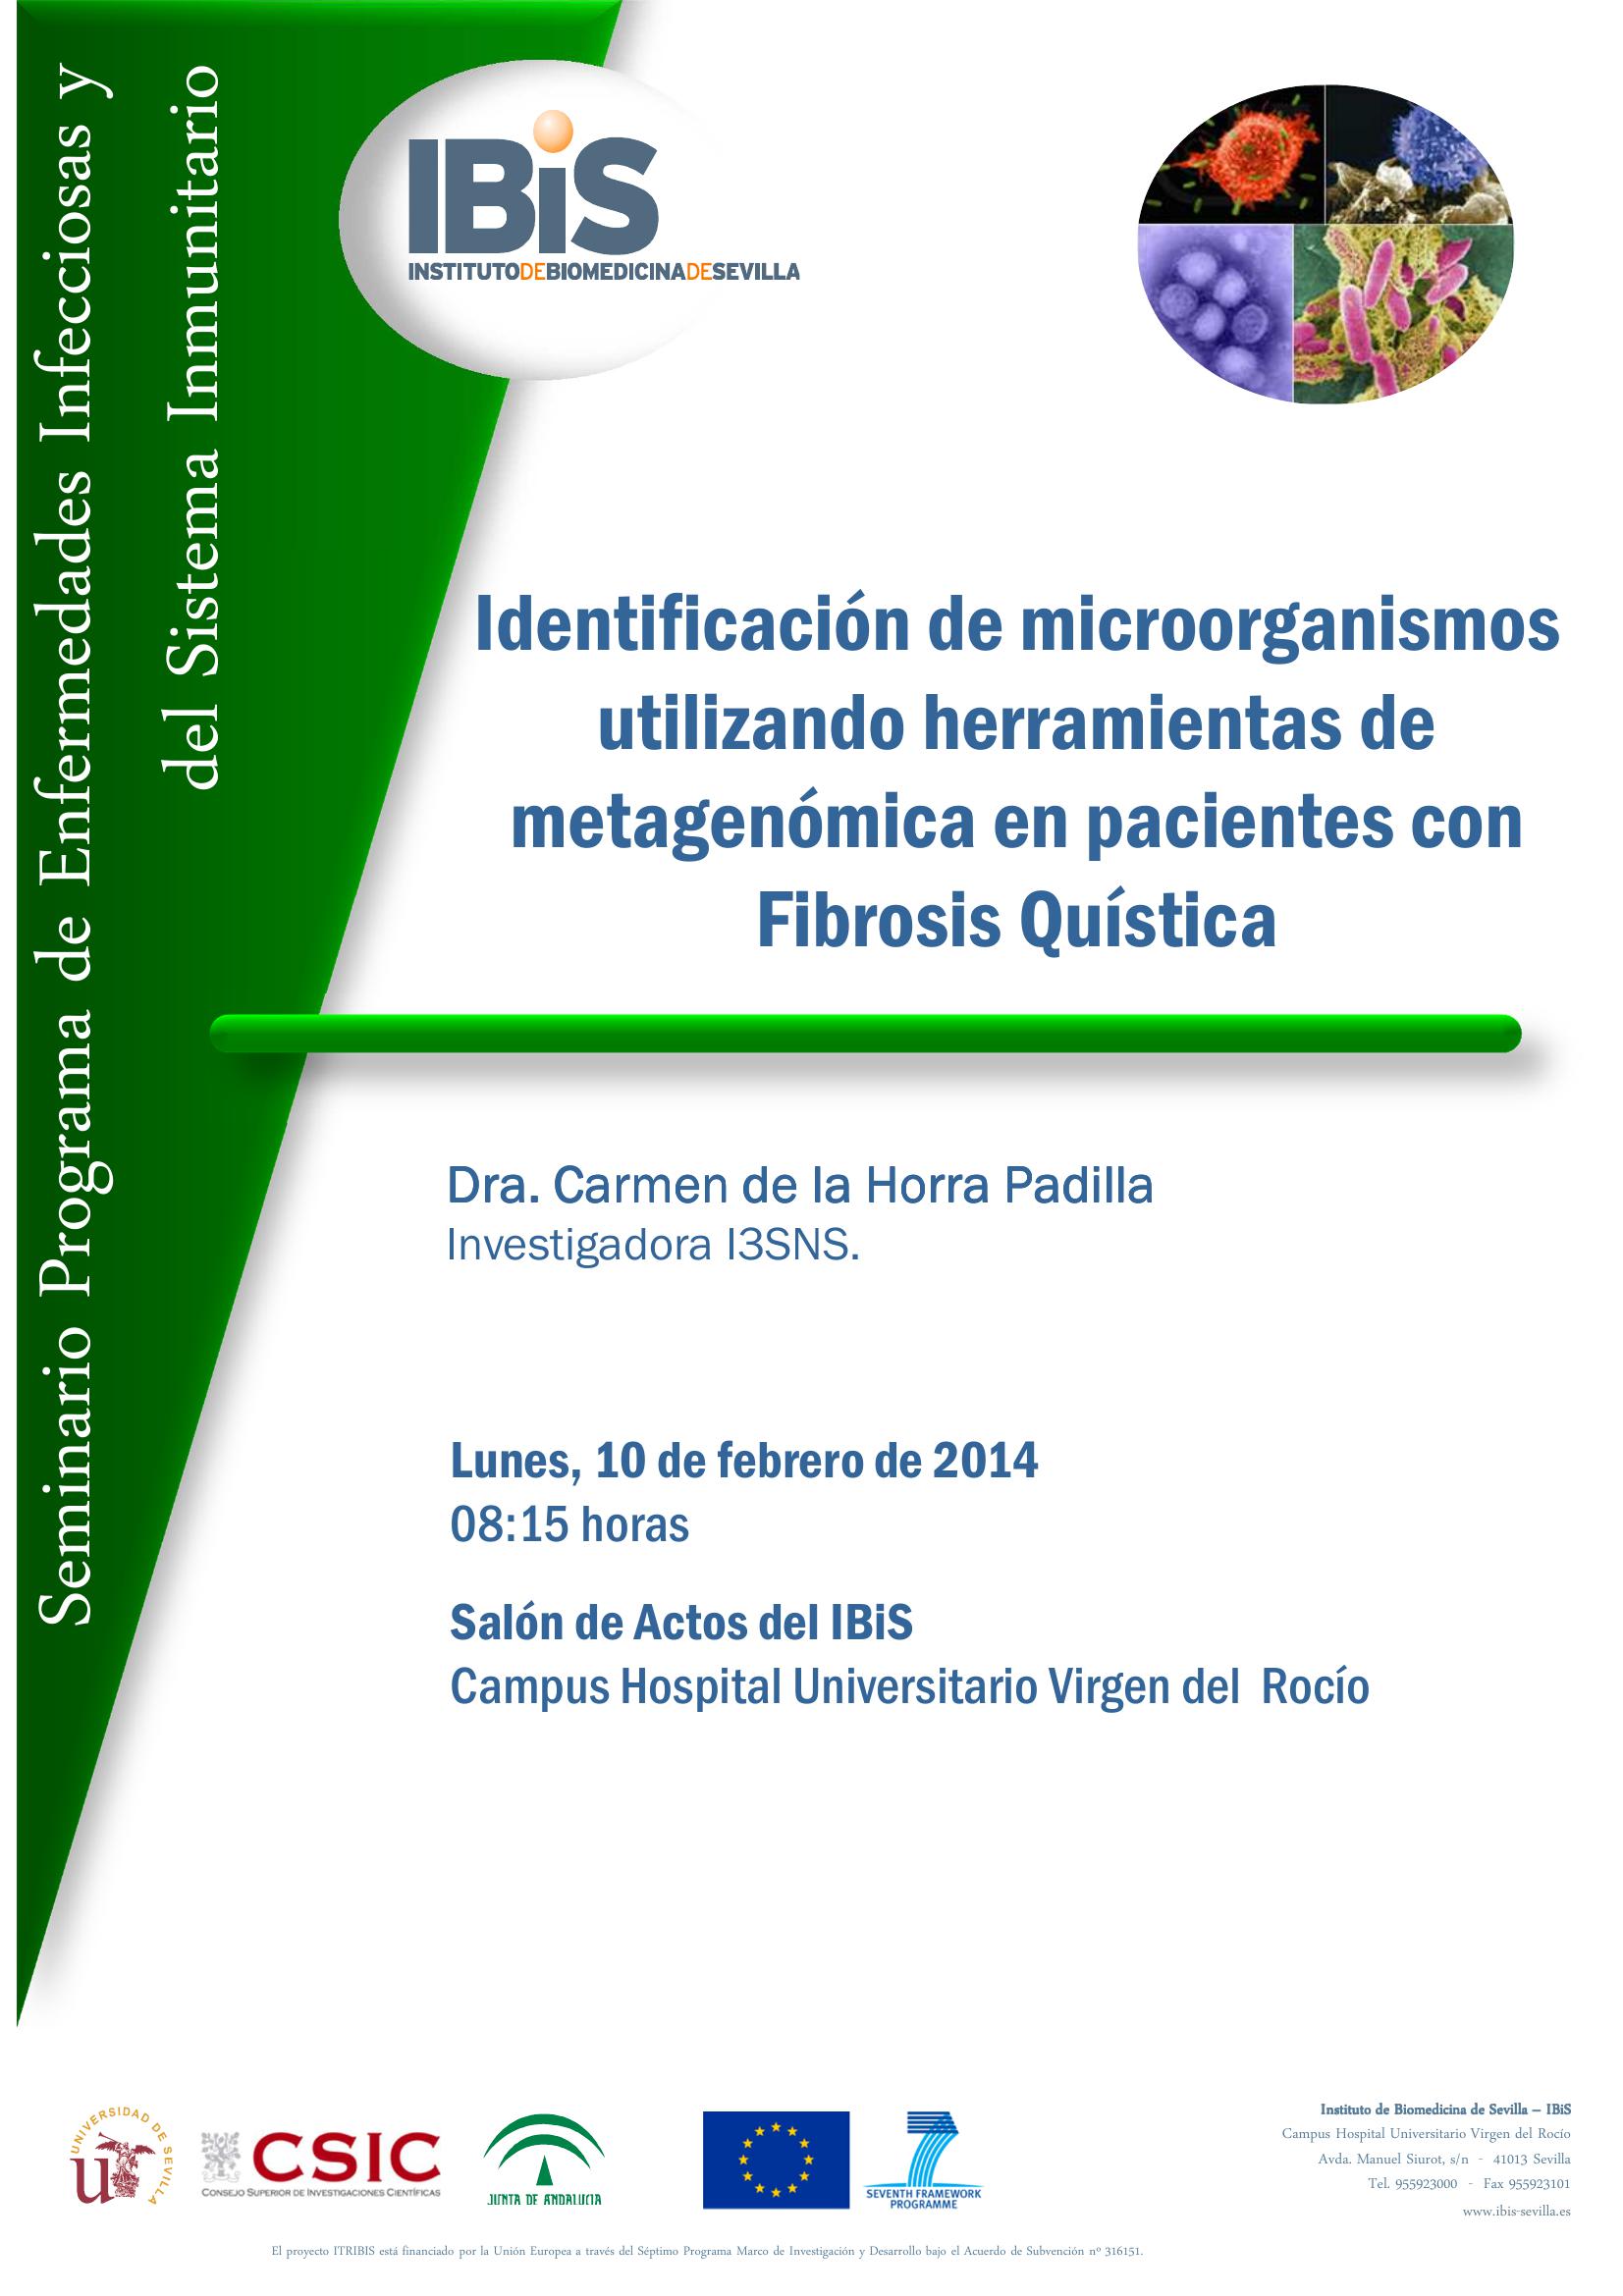 Poster: Identificación de microorganismos utilizando herramientas de metagenómica en pacientes con Fibrosis Quística